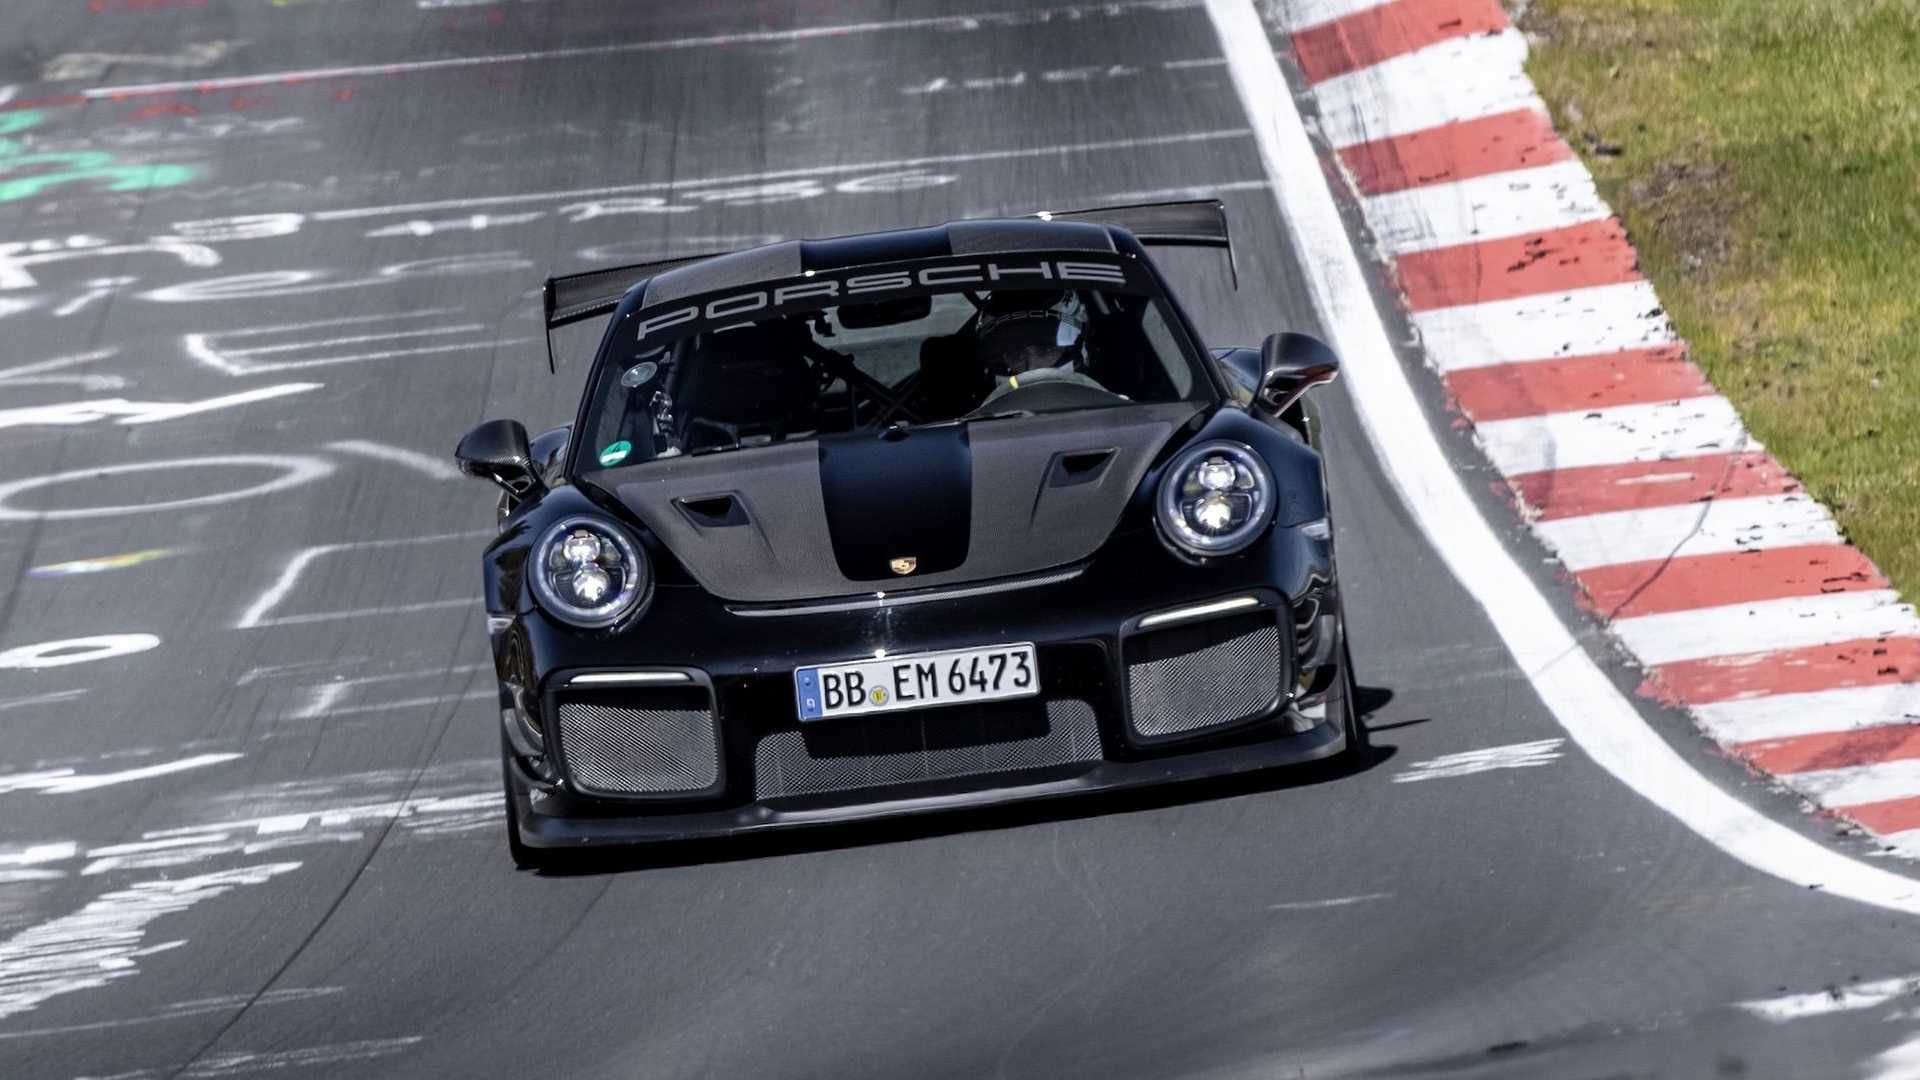 نمای جلو پورشه 911 جی تی 2 آر اس / Porsche 911 GT2 RS تیونینگ Manthey Racing در مسیر پیست